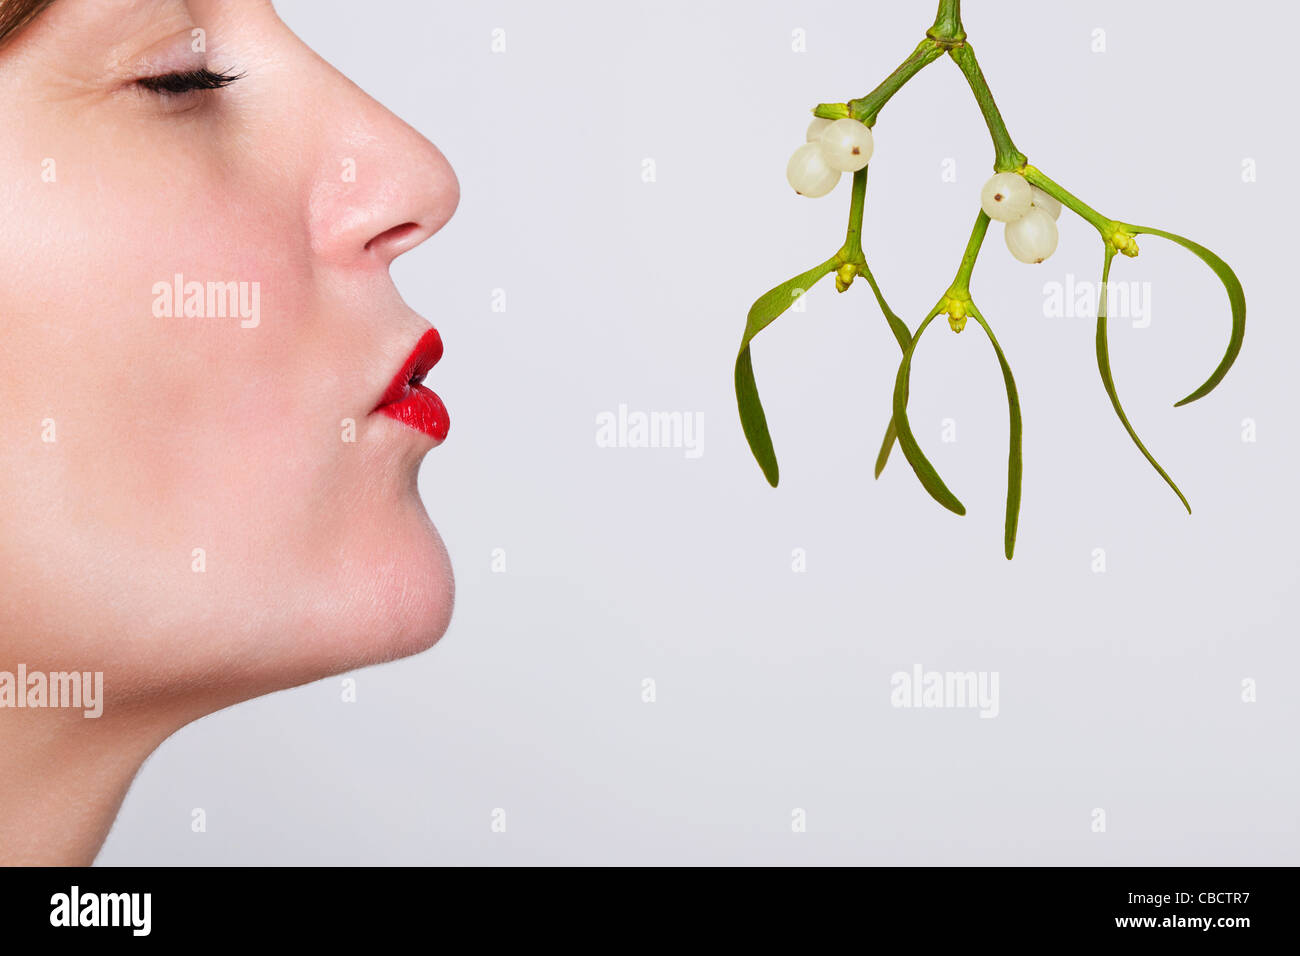 Foto di una donna con gli occhi chiusi e rossetto rosso su In attesa di essere baciati sotto il vischio. Foto Stock